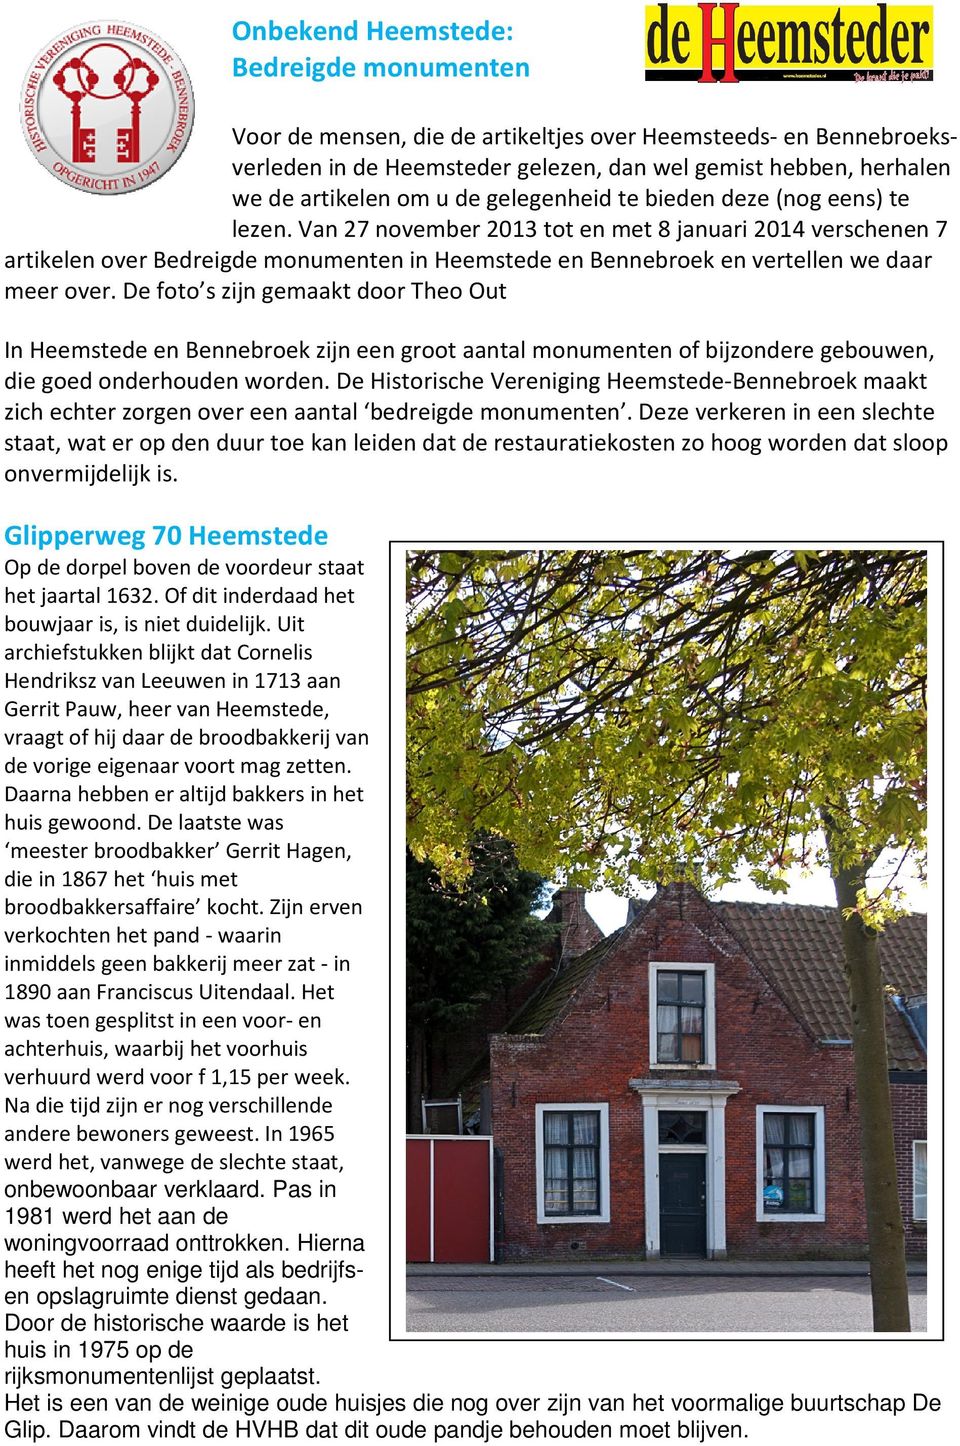 Van 27 november 2013 tot en met 8 januari 2014 verschenen 7 artikelen over Bedreigde monumenten in Heemstede en Bennebroek en vertellen we daar meer over.